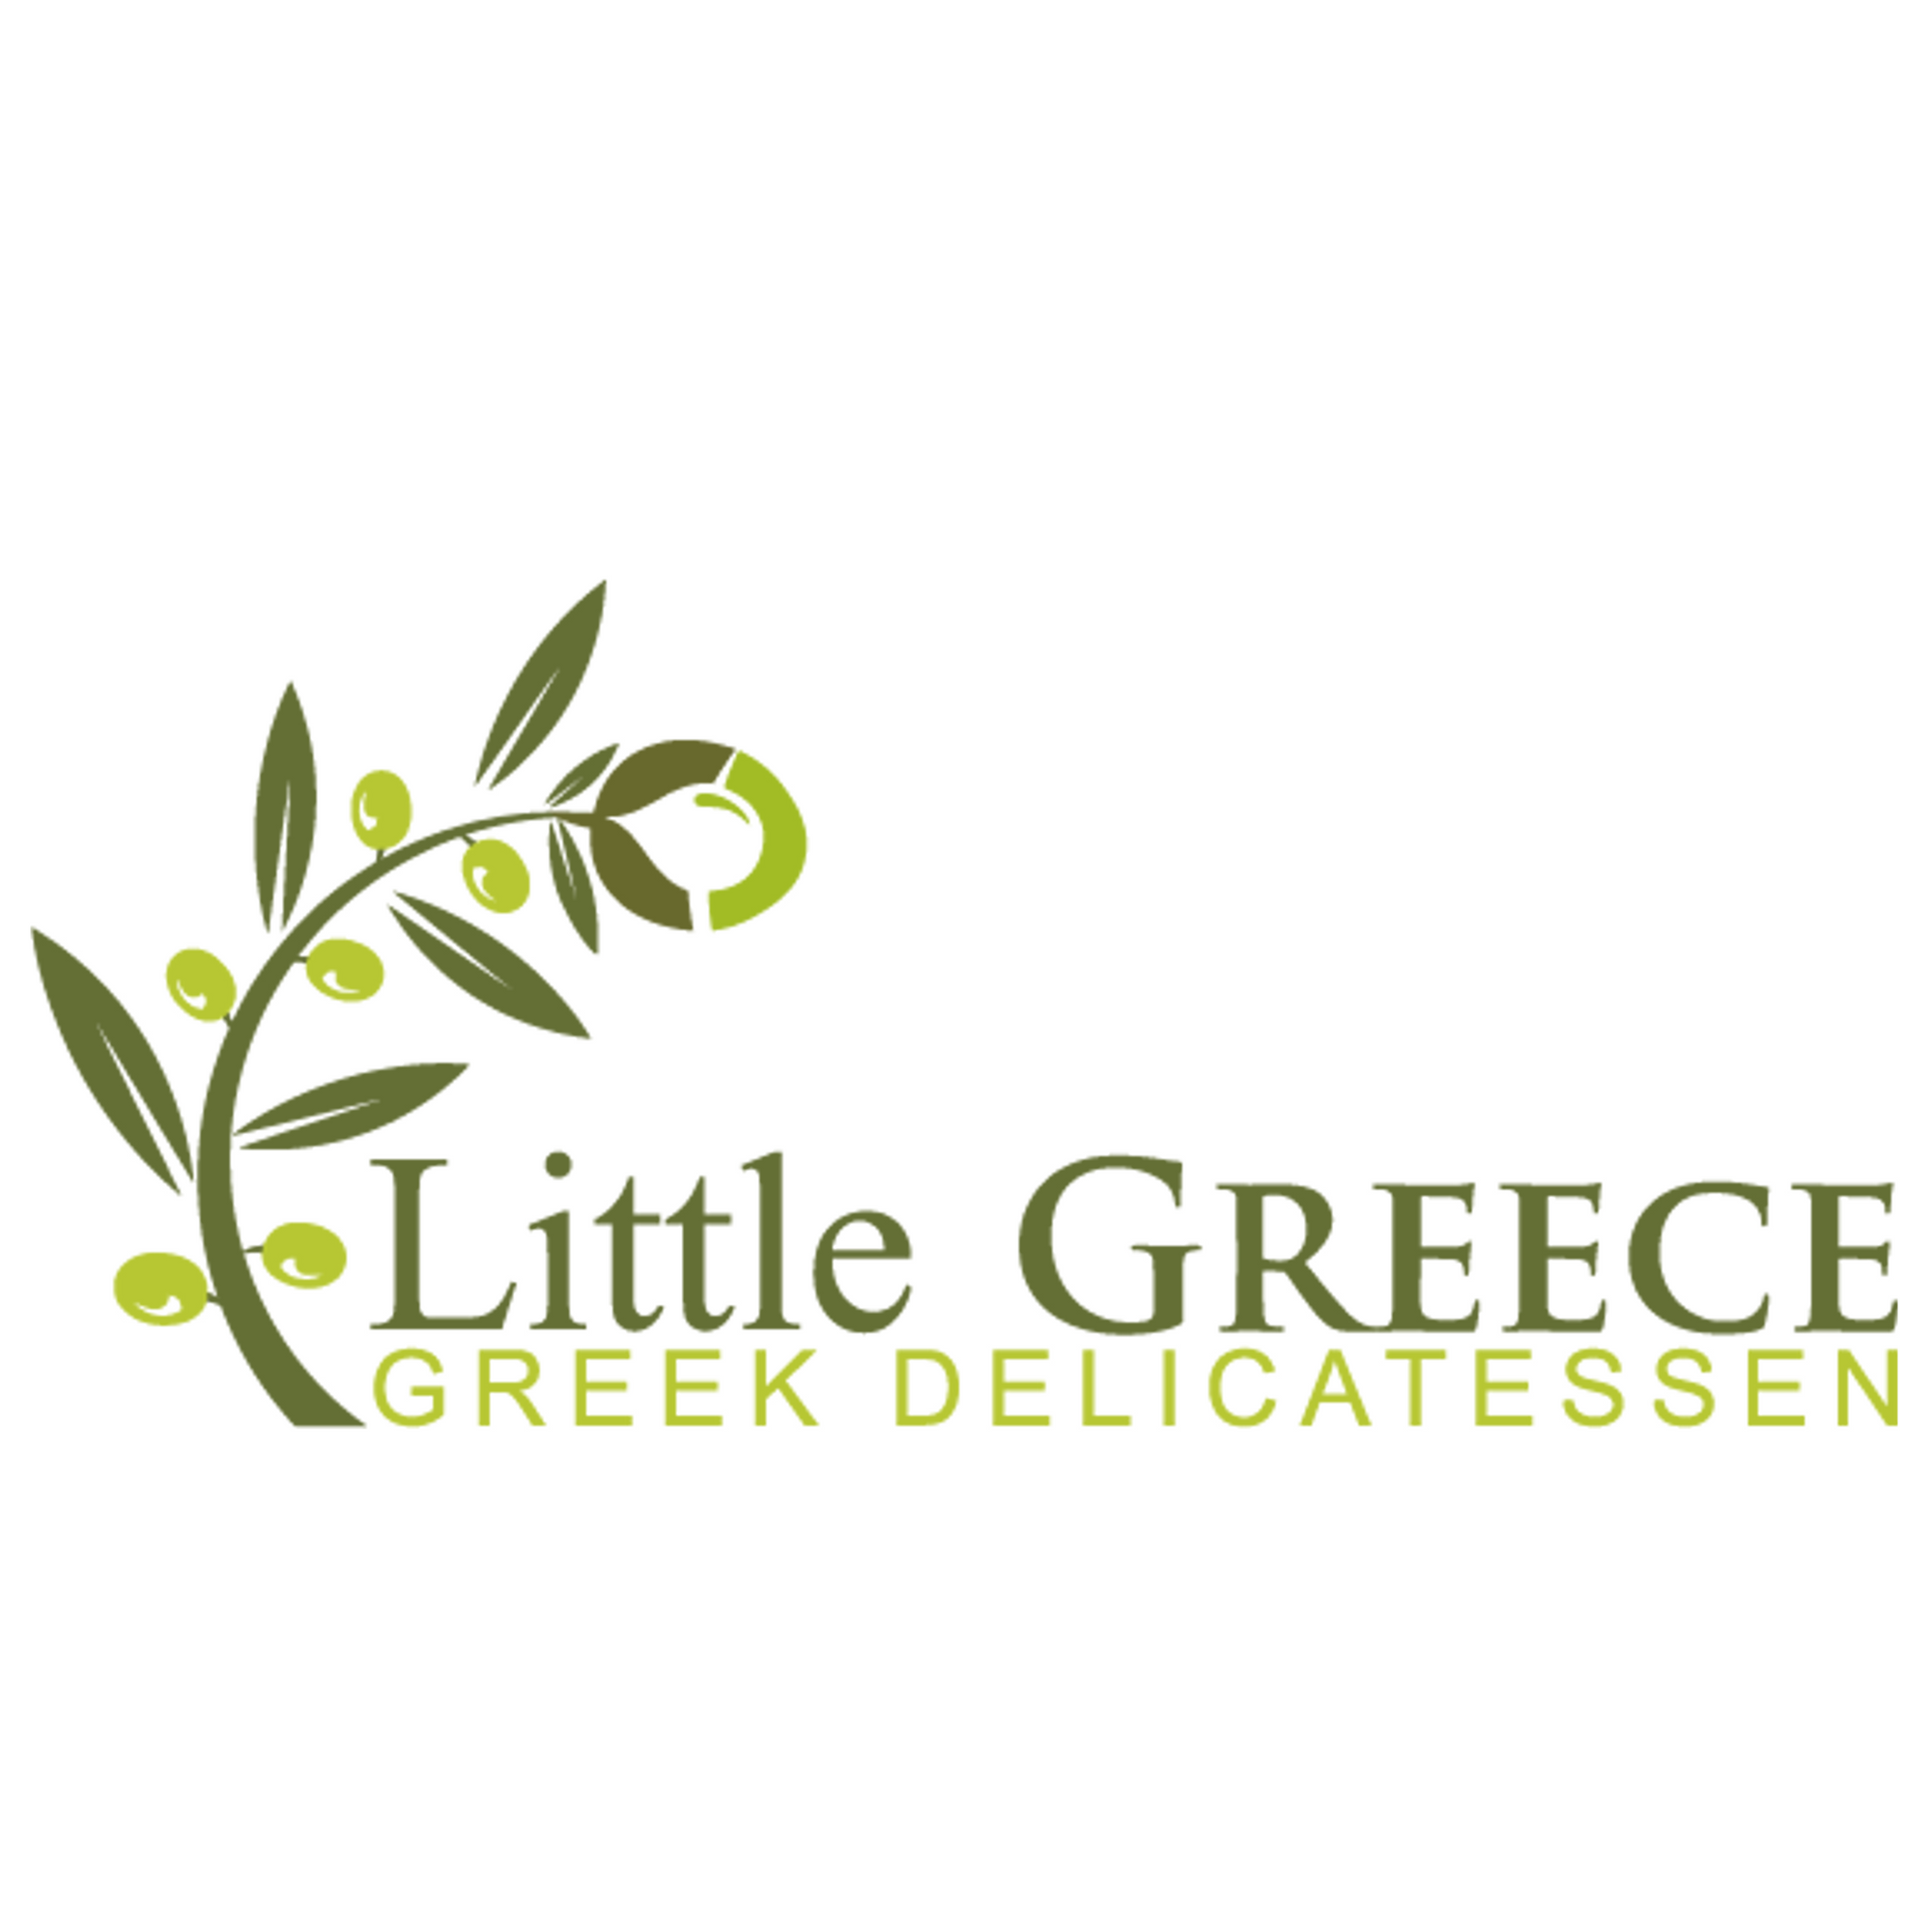 Little Greece Gift Voucher